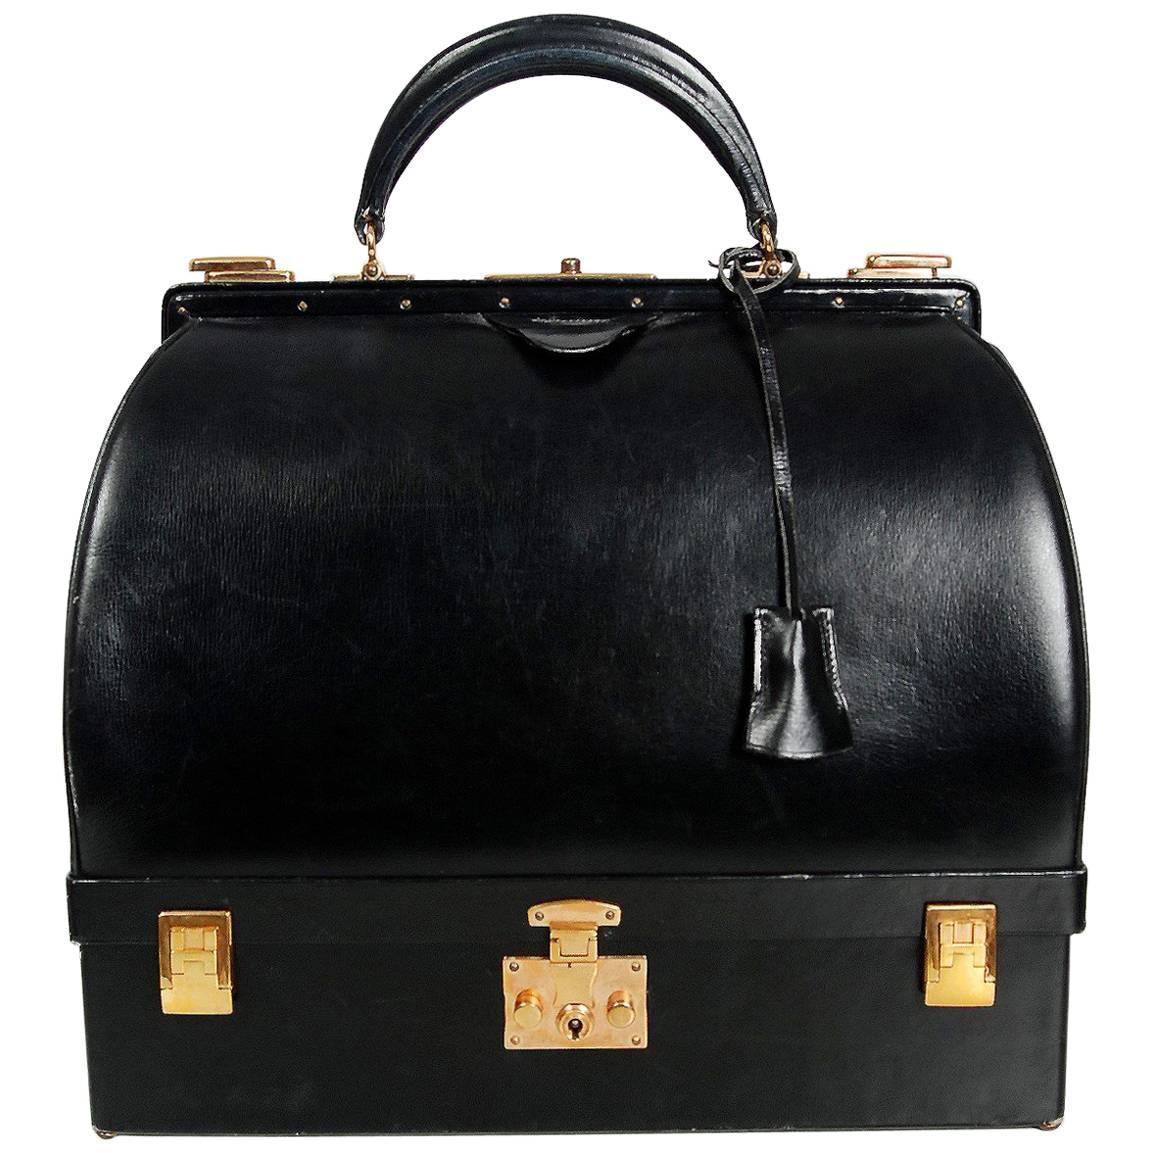 Hermes Paris Rare Black Leather Sac Mallette Two Tier Travel Case Handbag, 1970s